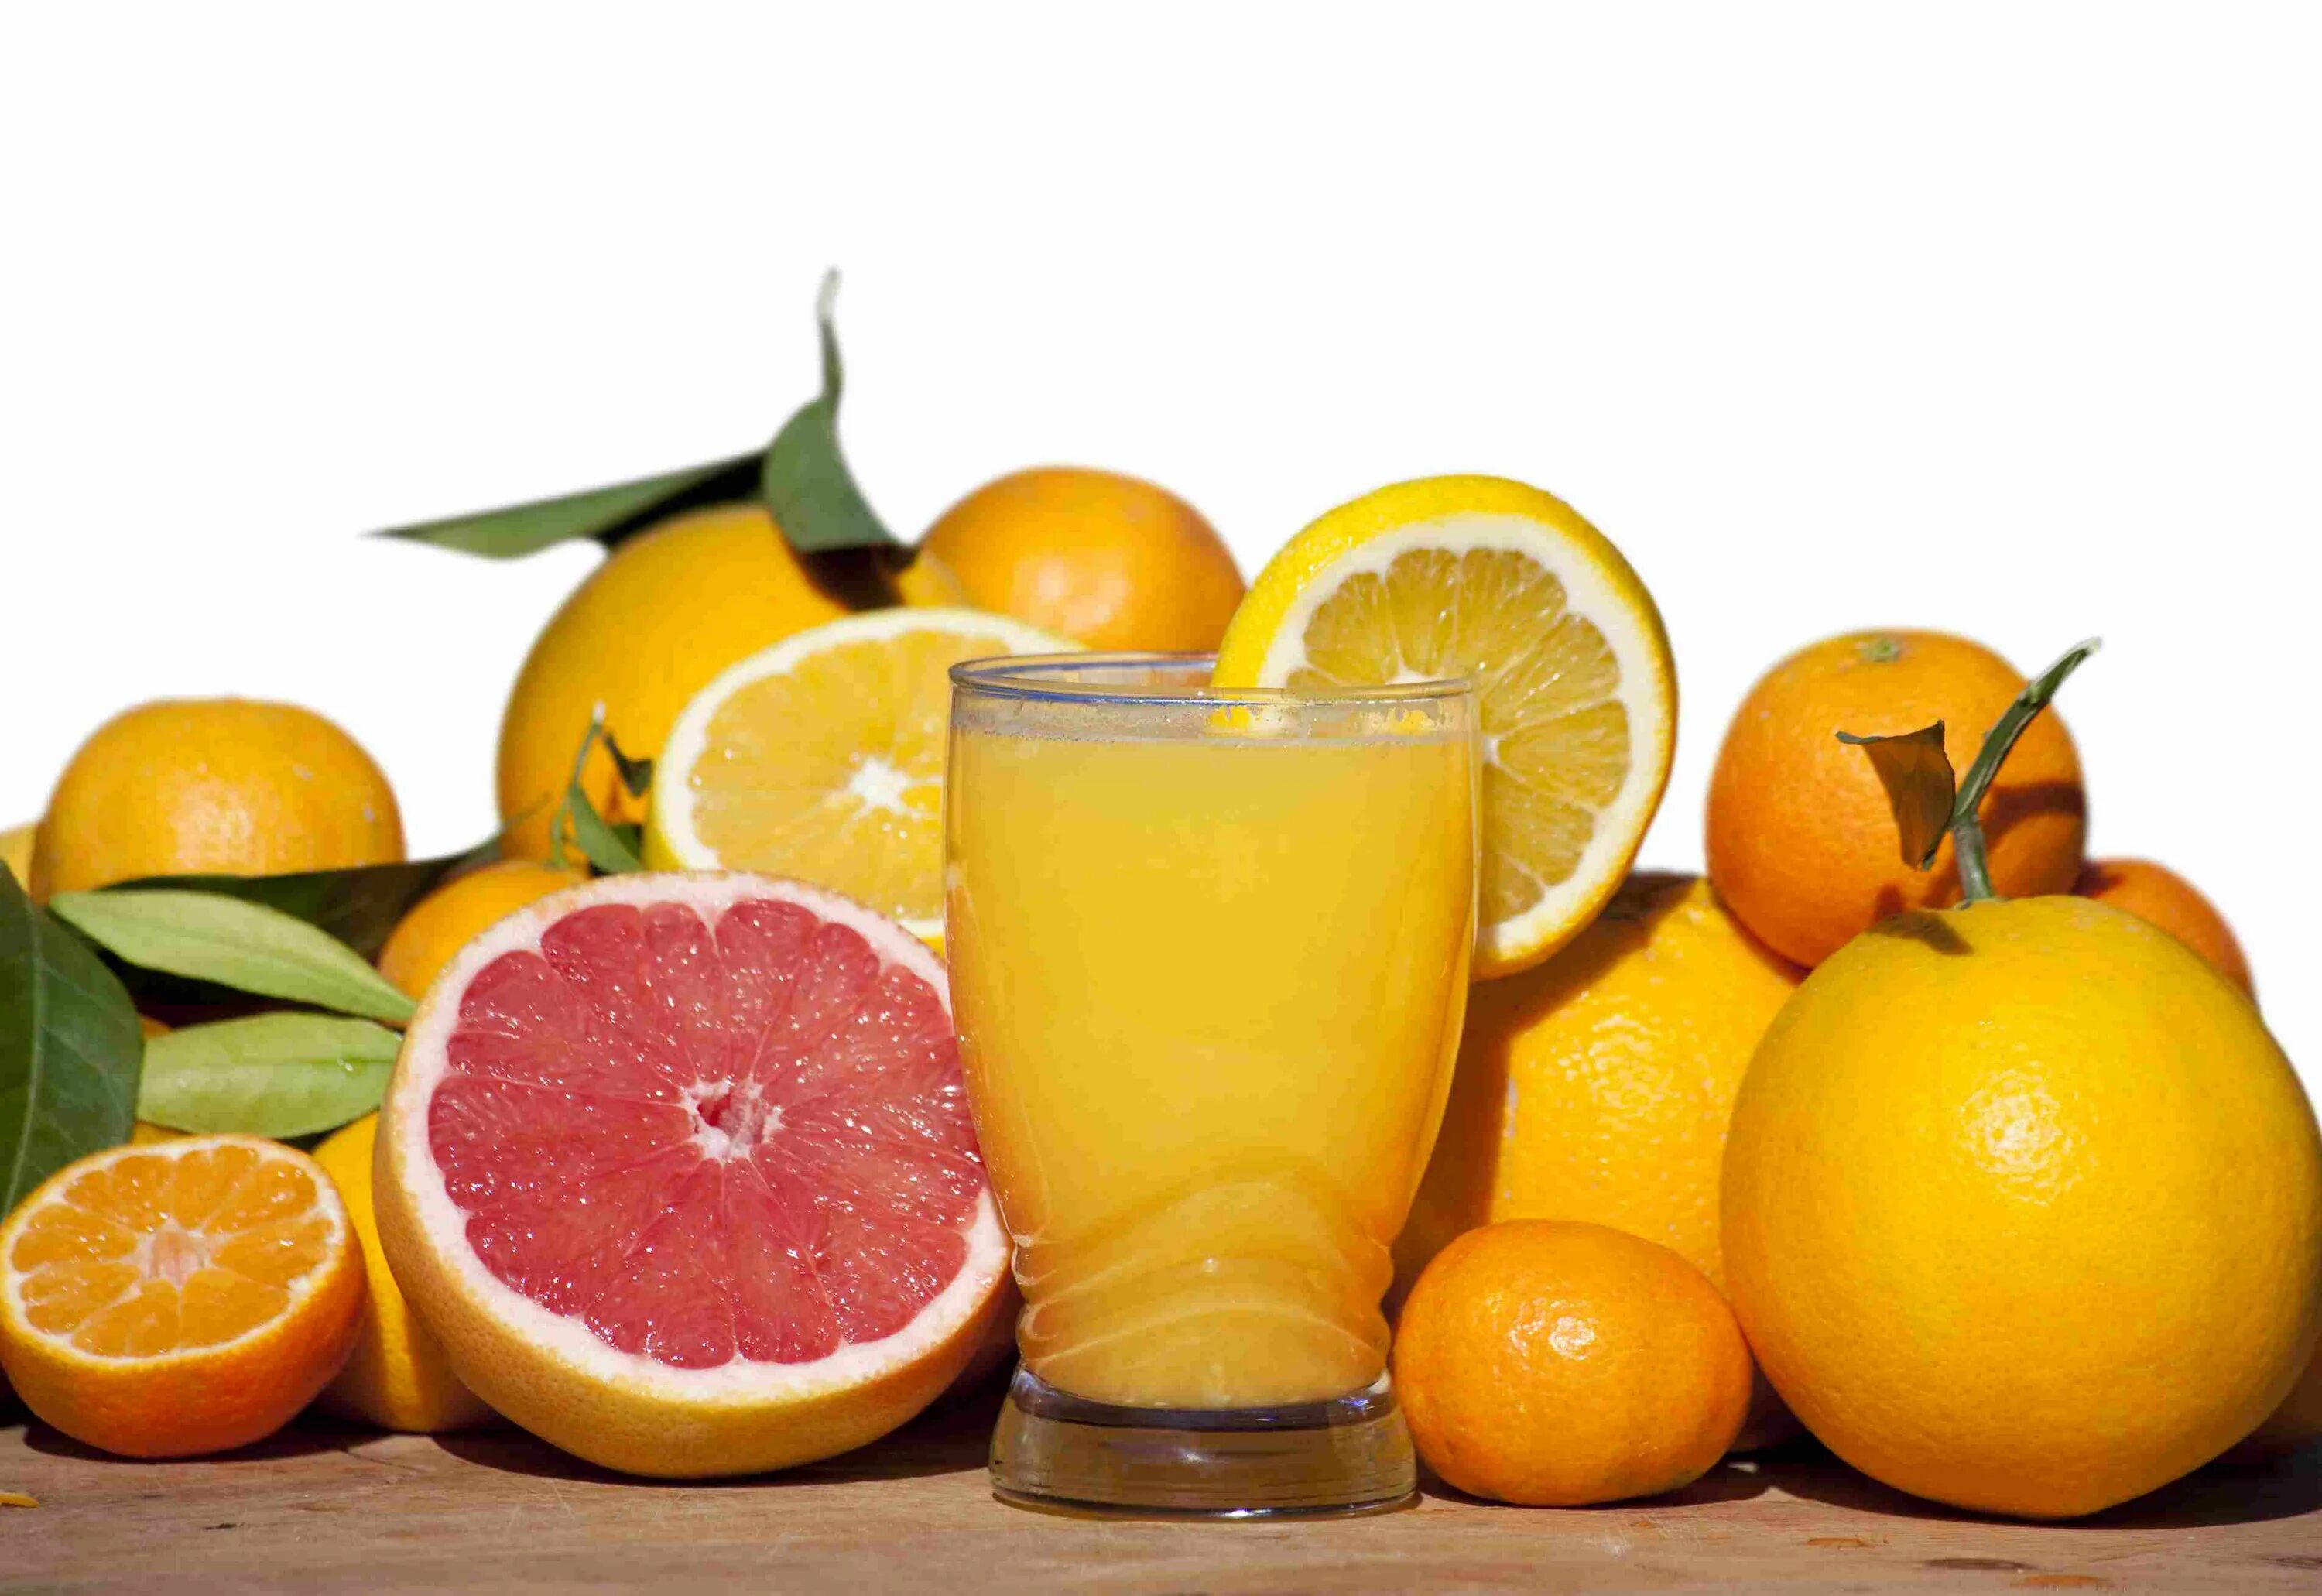 Vitamin j. Что такое витамины. Витамины в цитрусовых фруктах. Витамин c. Витамин ц апельсин.